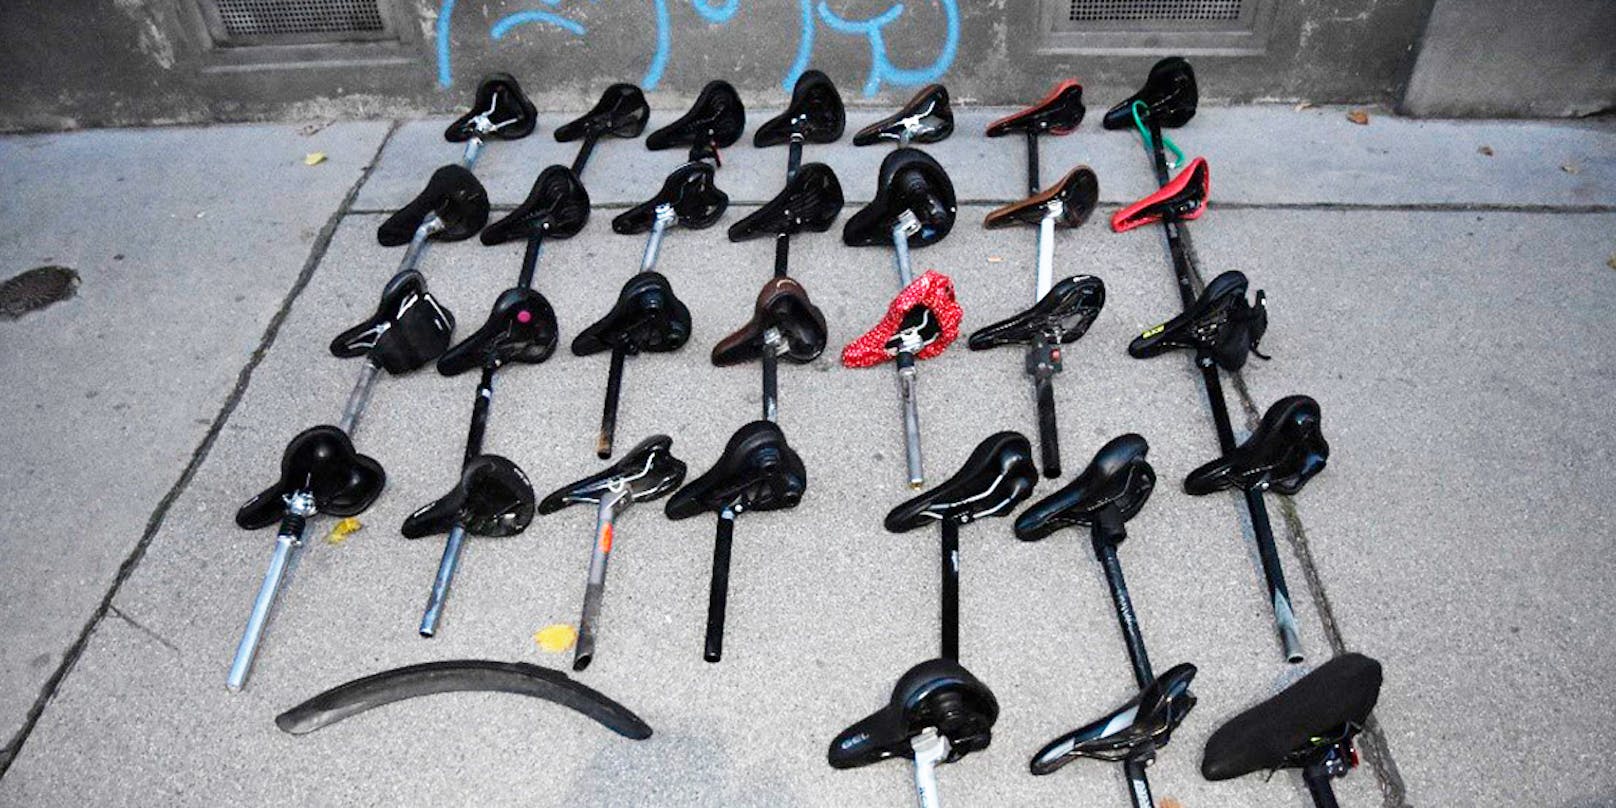 Zwei mutmaßliche Fahrraddiebe wurden am Mittwoch in Wien-Erdberg festgenommen